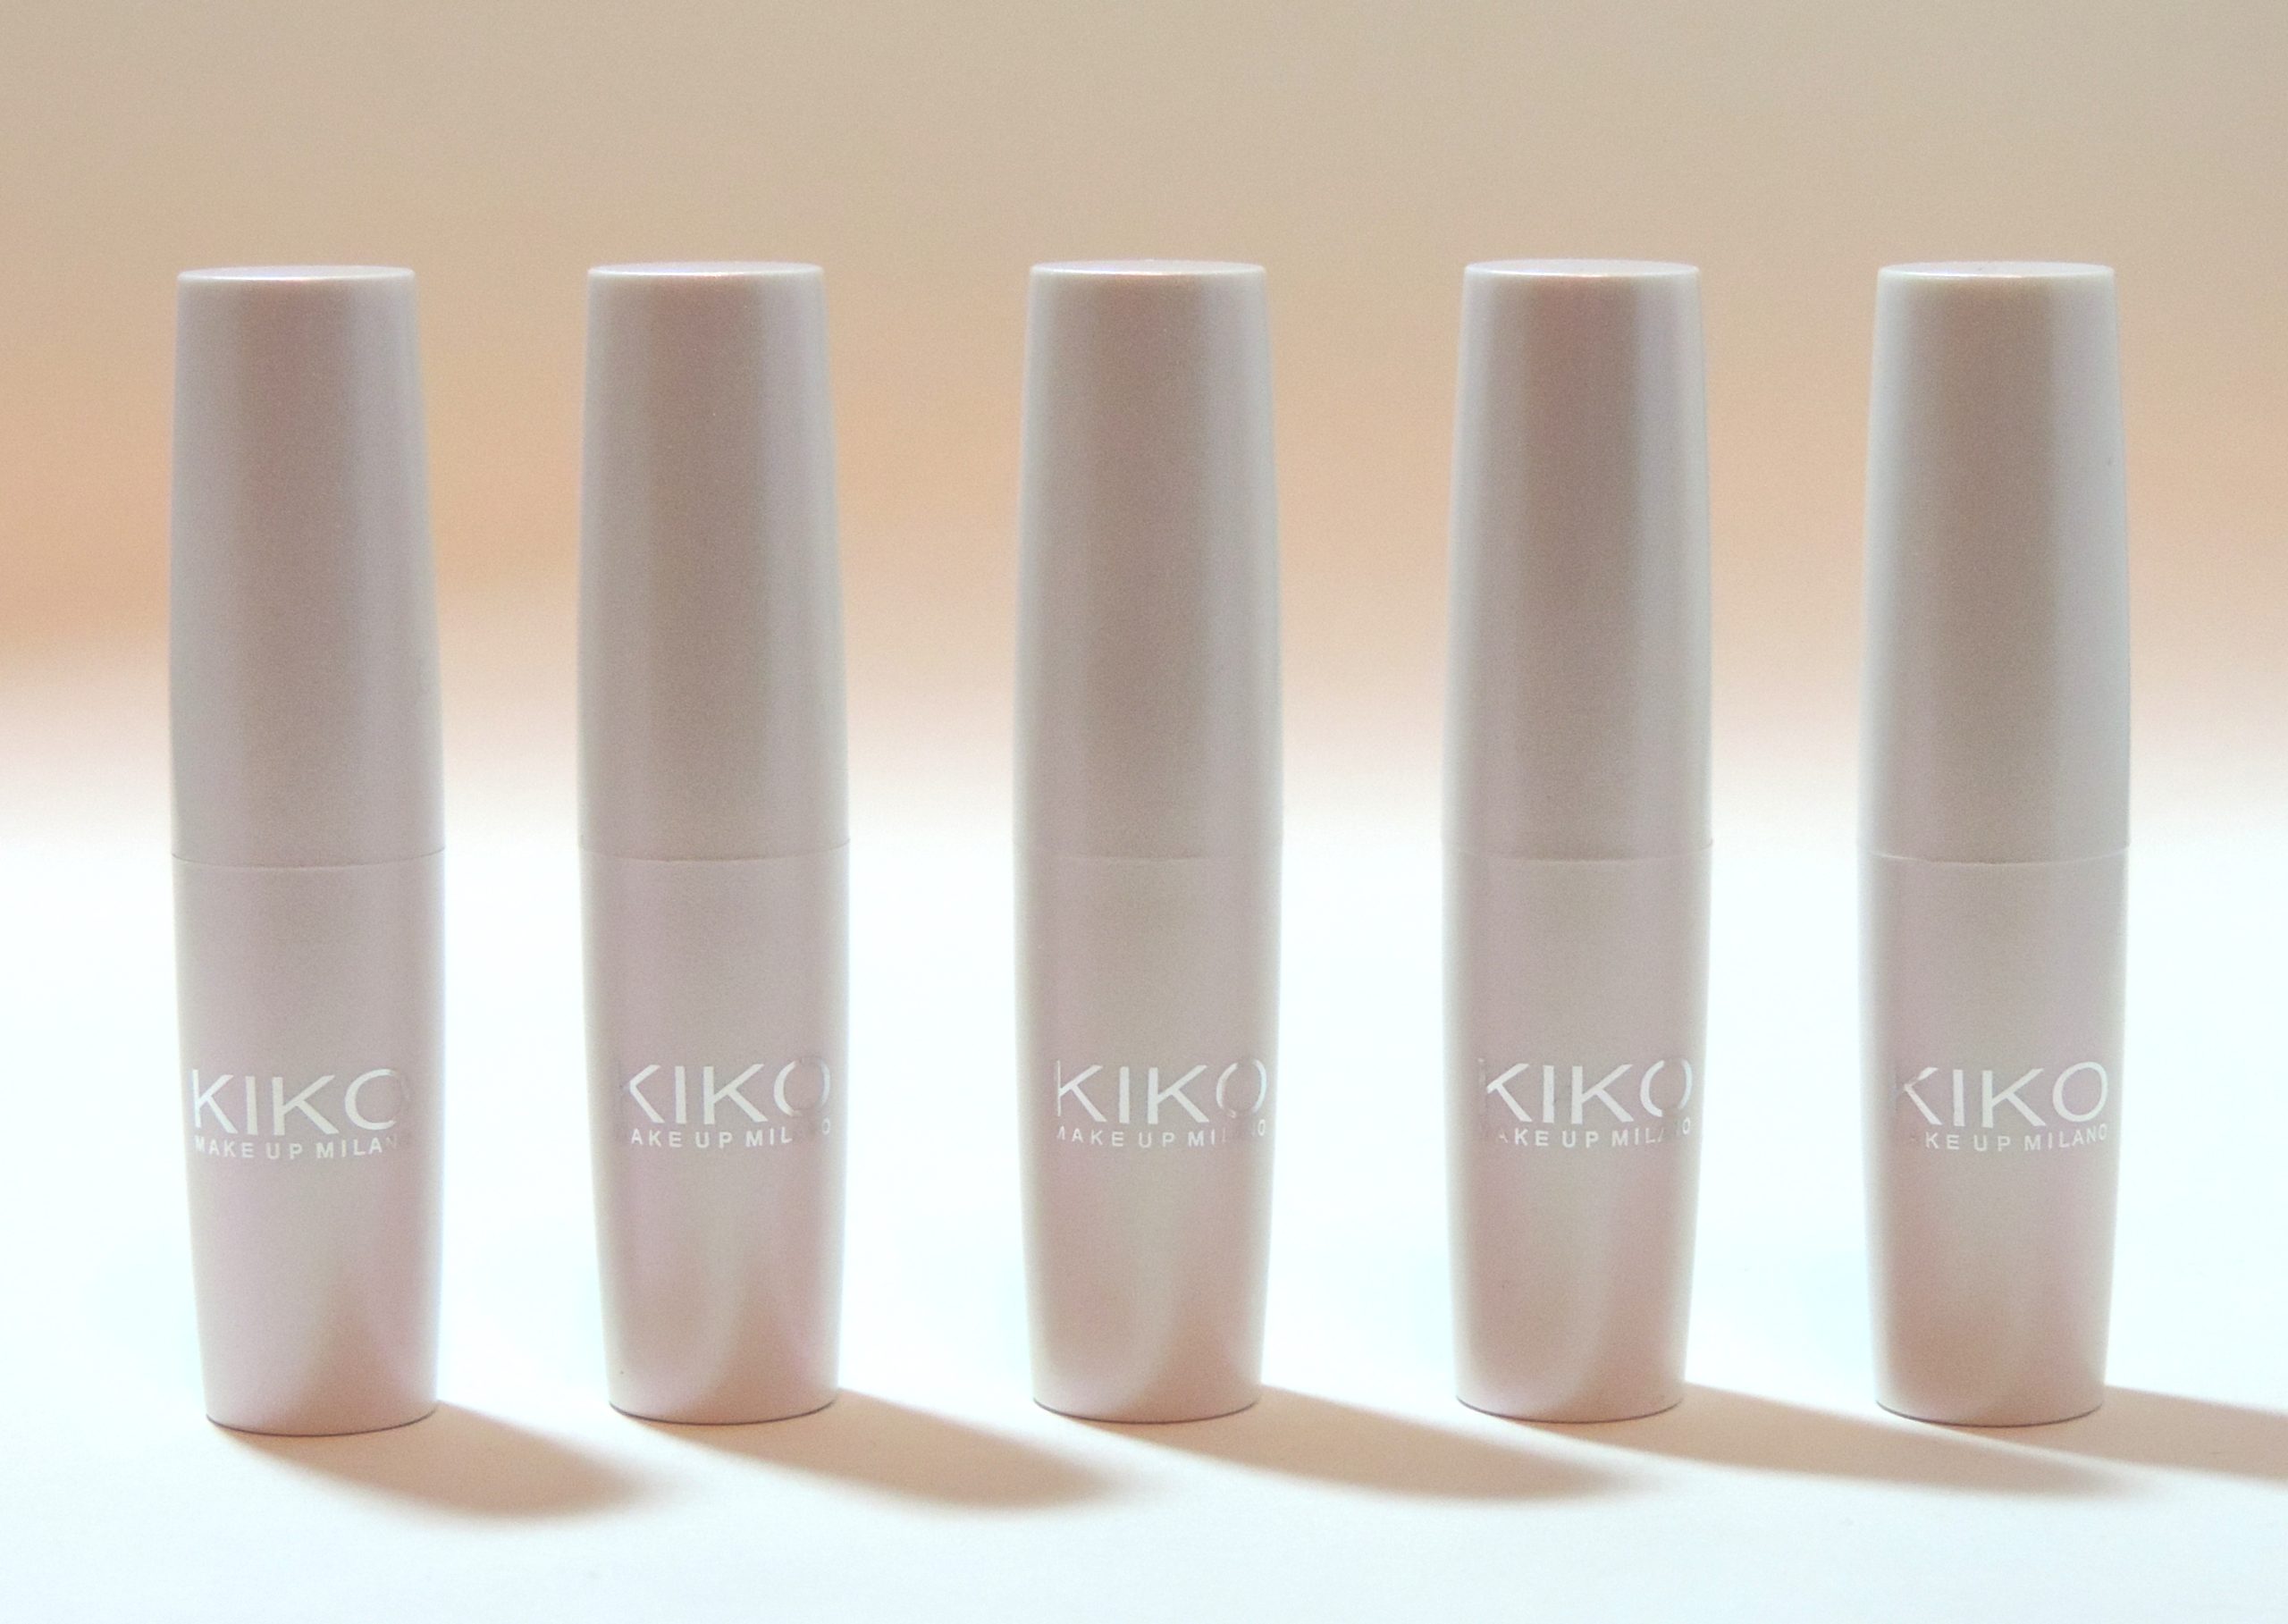 12 Gifts of Christmas: Kiko Ultra Glossy Stylo Lipstick Set